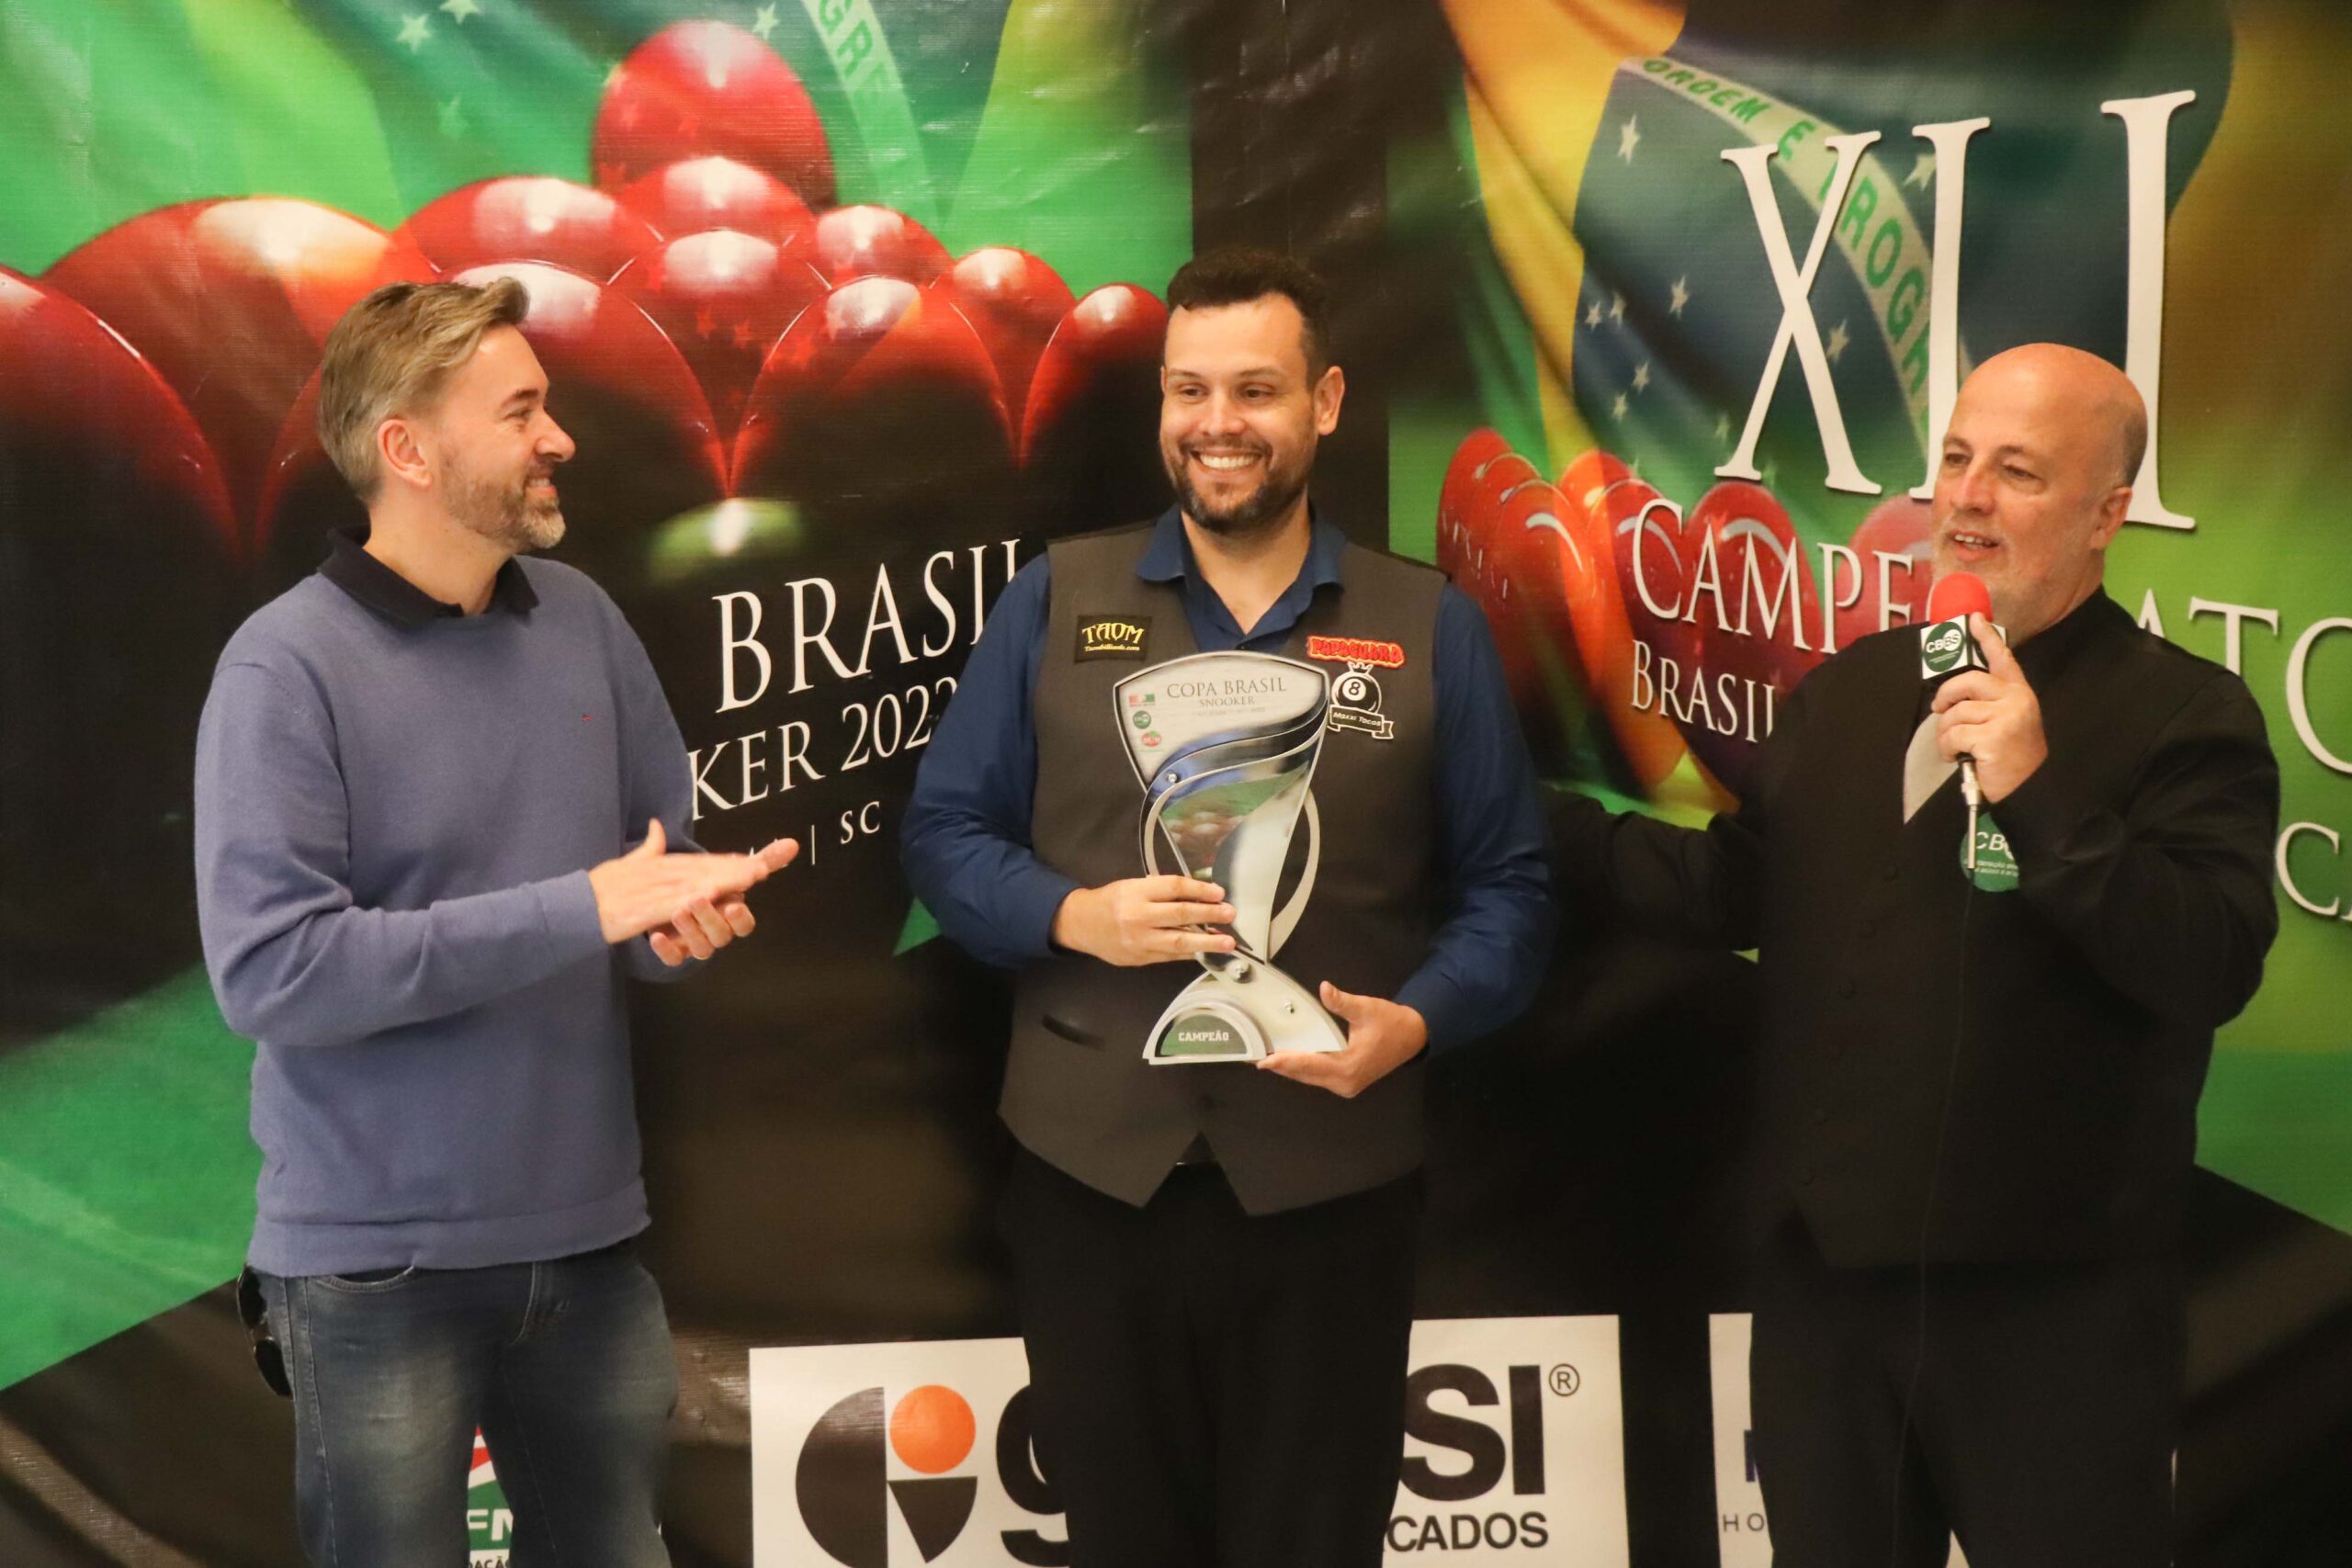 Melhor jogador de sinuca do Brasil participa de campeonato em Várzea Grande  :: J1 - O seu portal de notícias